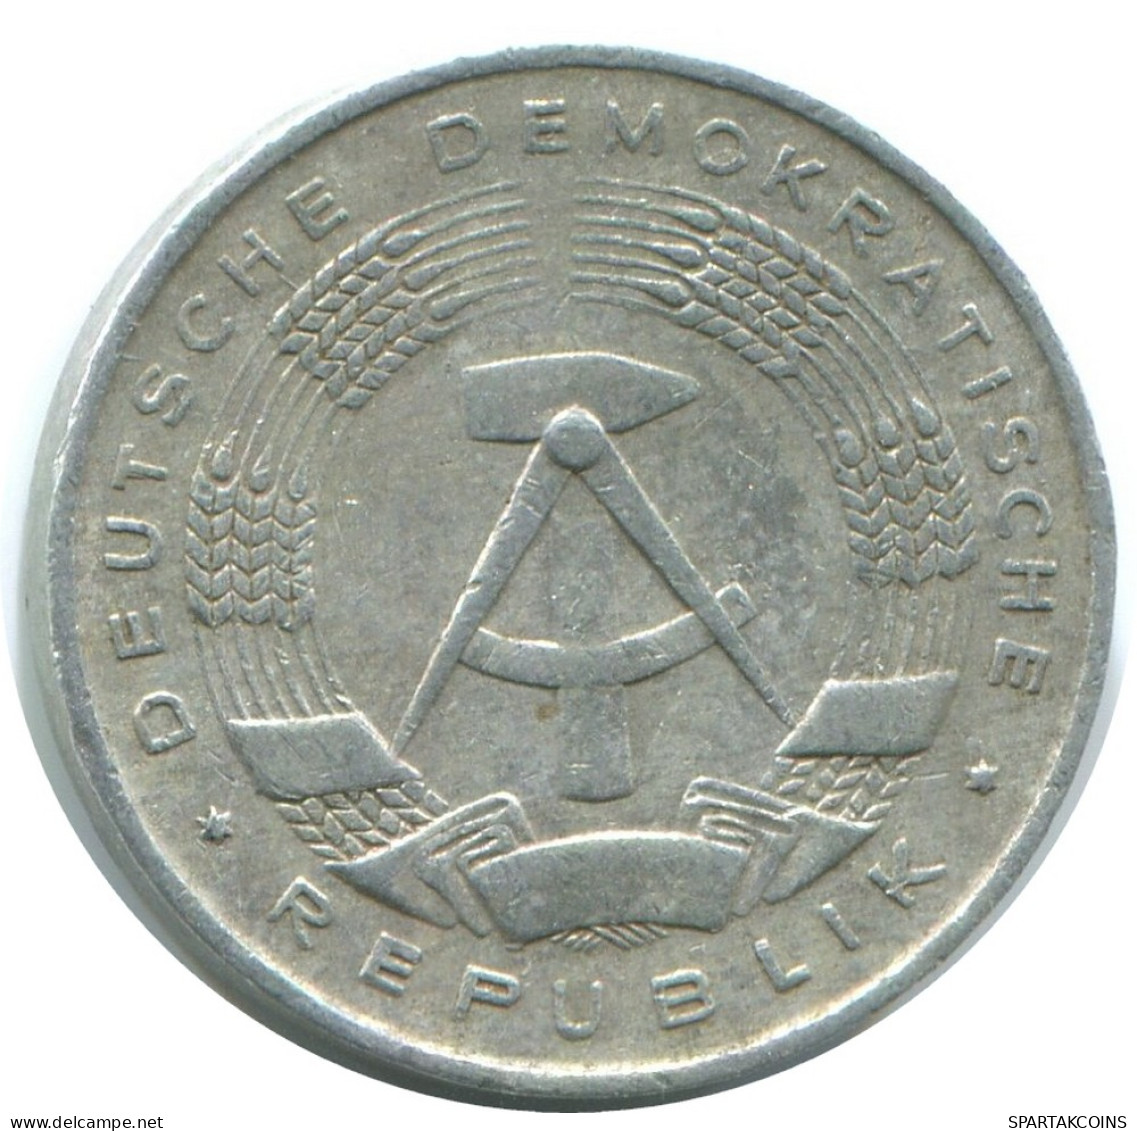 1 PFENNIG 1961 A DDR EAST ALEMANIA Moneda GERMANY #AE056.E - 1 Pfennig